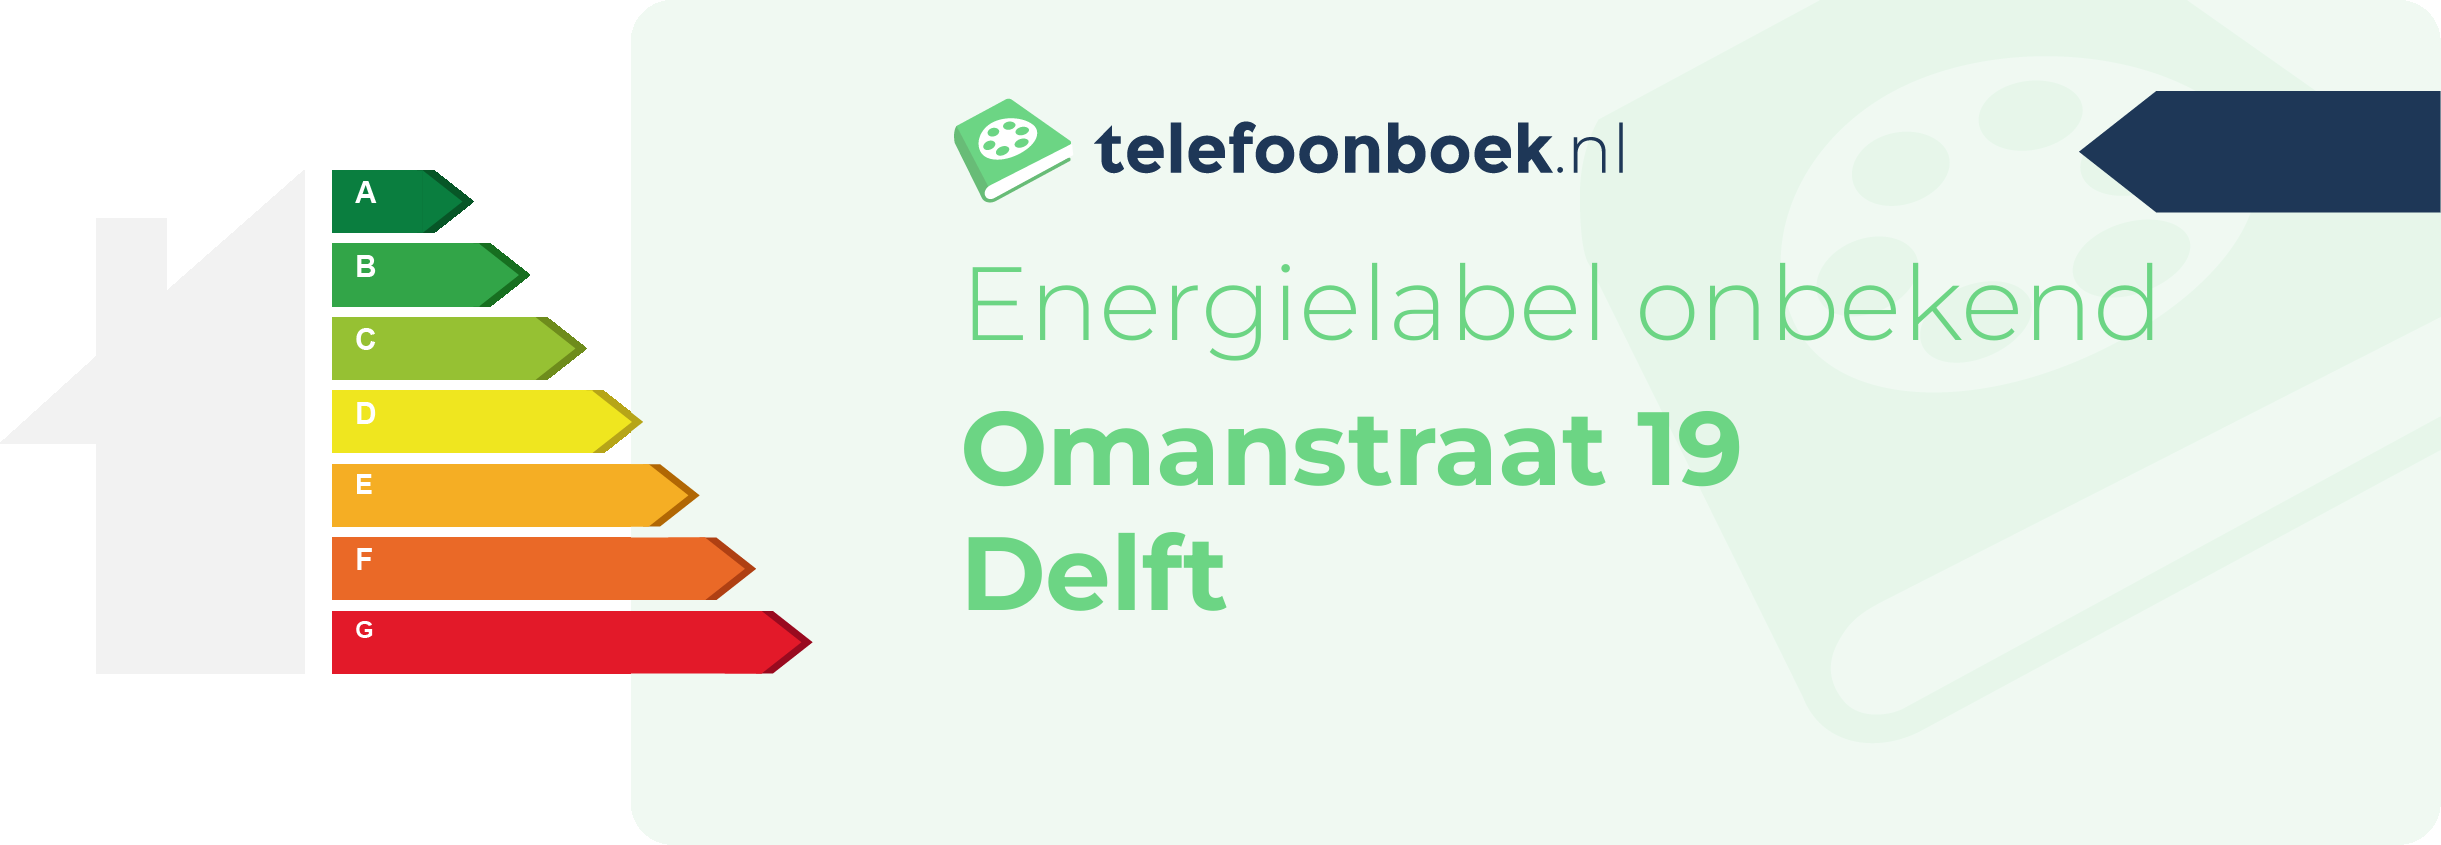 Energielabel Omanstraat 19 Delft